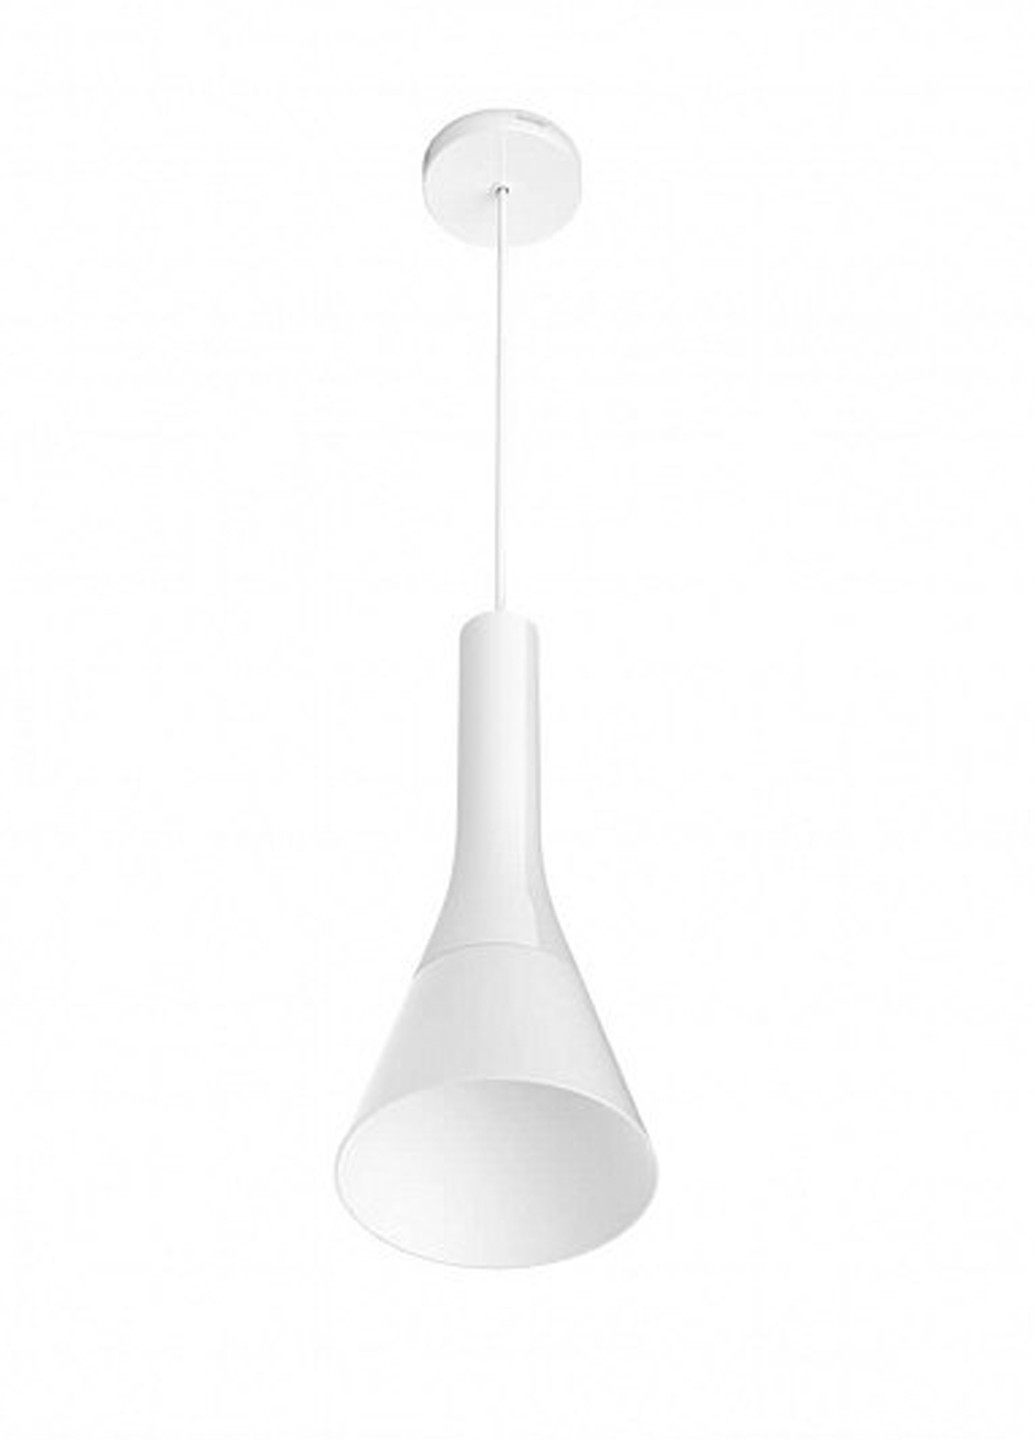 Смарт-светильник Explore Hue pendant white 1x9.5W 230V (43001/31/P7) Philips смарт explore hue pendant white 1x9.5w 230v (43001/31/p7) (142289737)